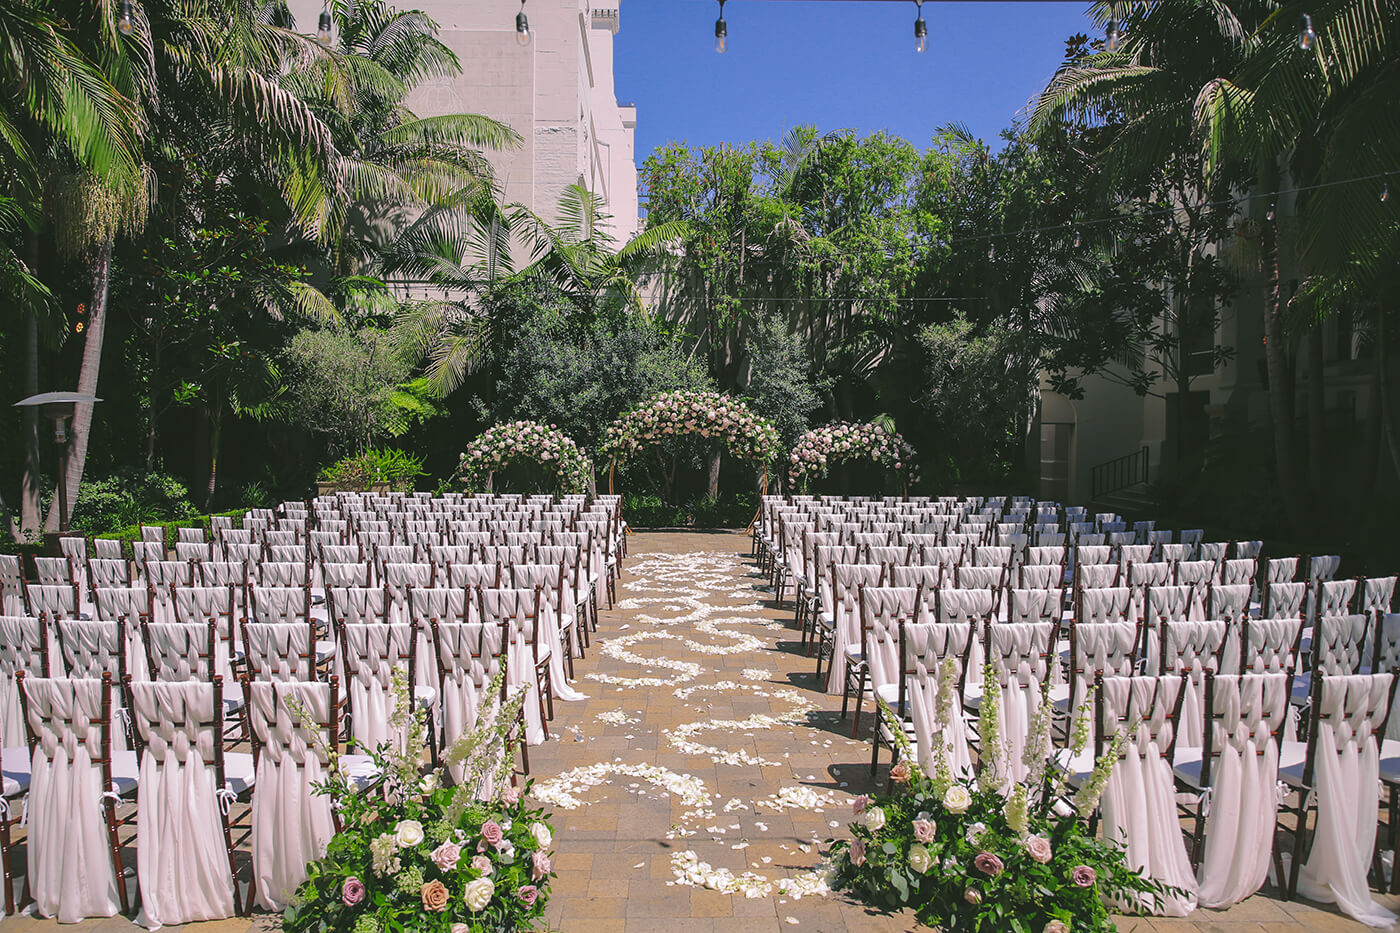 Vibiana Wedding outdoor courtyard setup